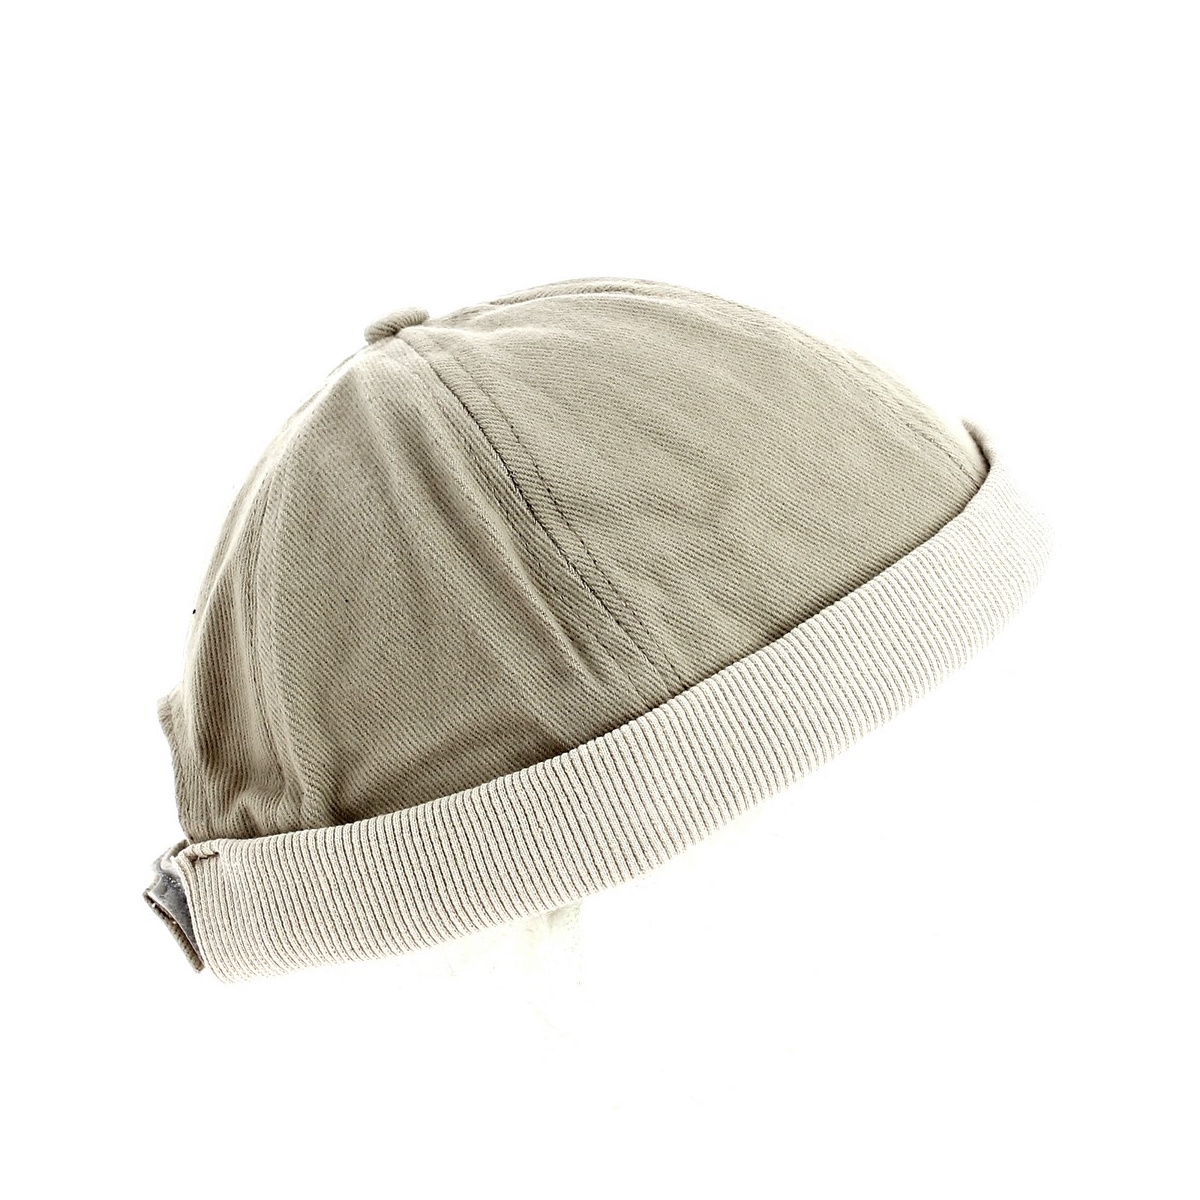 Bonnet marin breton ⇒ Achat bonnet miki pour homme en coton